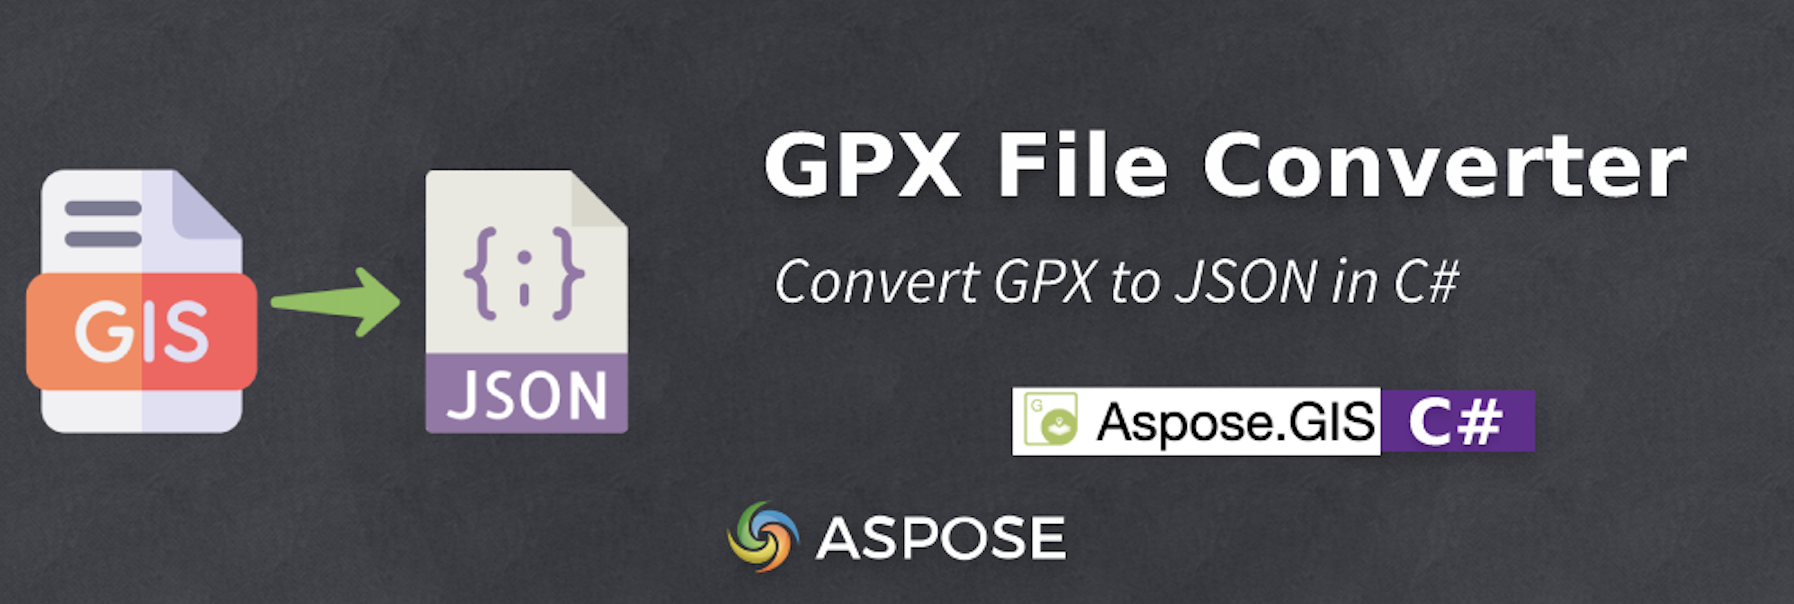 Konvertieren Sie GPX in JSON in C# – GPX File Converter